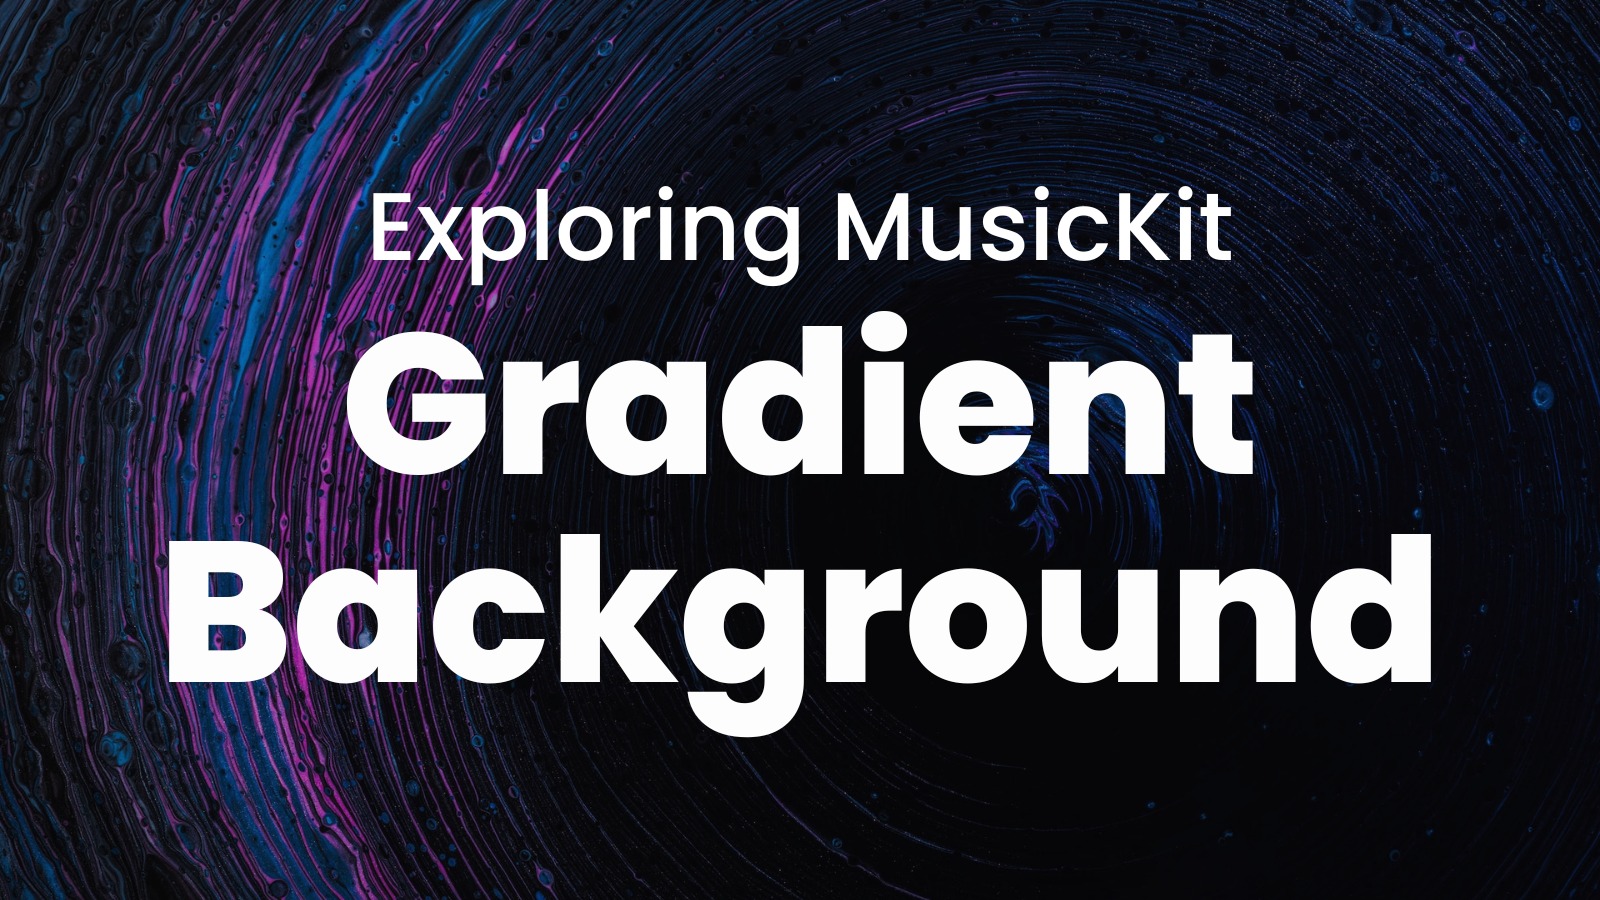 Tìm hiểu MusicKit: Gradient nền: MusicKit là một khung công cụ trang trí ấn tượng cho trang web của bạn. Hãy khám phá những kiểu gradient nền độc đáo và sáng tạo mà MusicKit có thể mang lại. Bạn sẽ không thể rời mắt khỏi những hình ảnh đẹp và độc đáo này!